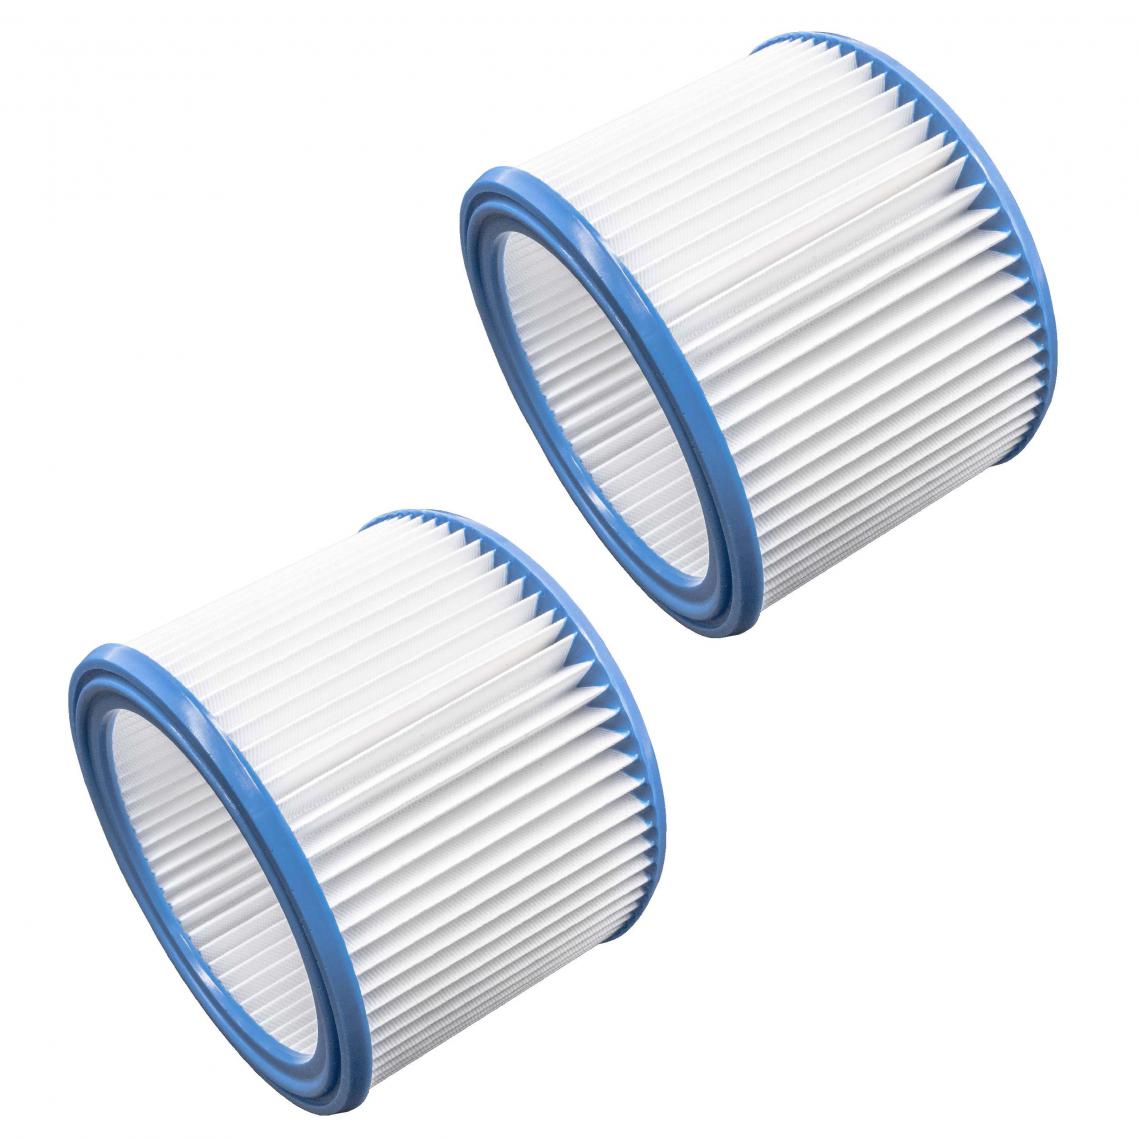 Vhbw - vhbw Set de filtres 2x Filtre plissé compatible avec Nilfisk / Alto / Wap Attix 791, 791-21 aspirateur à sec ou humide - Filtre à cartouche - Accessoire entretien des sols